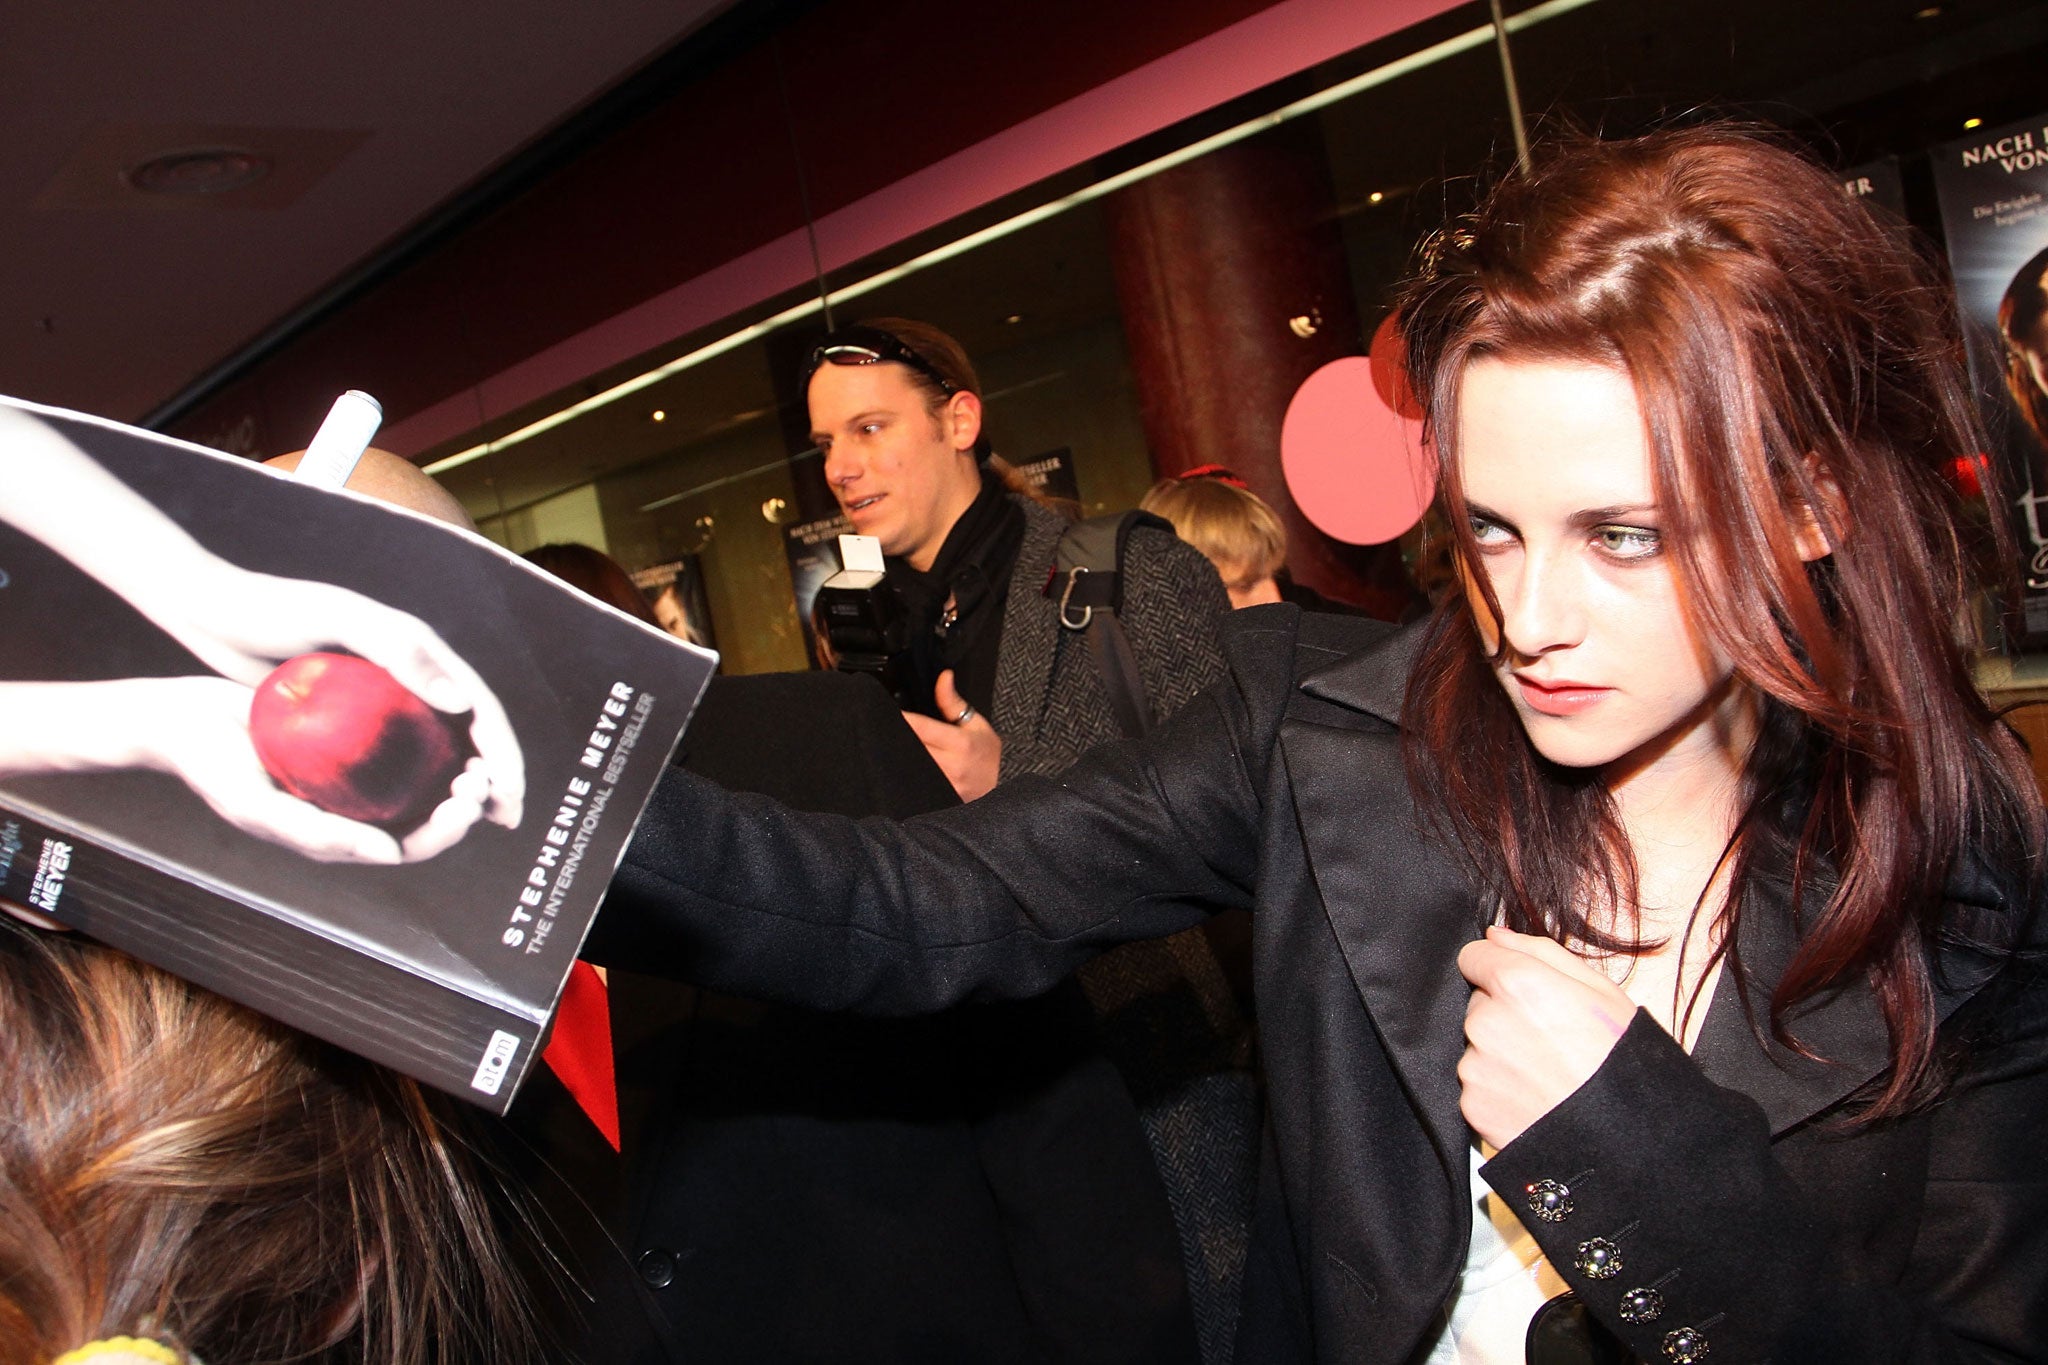 Acress Kristen Stewart signs a fan's copy of Twilight